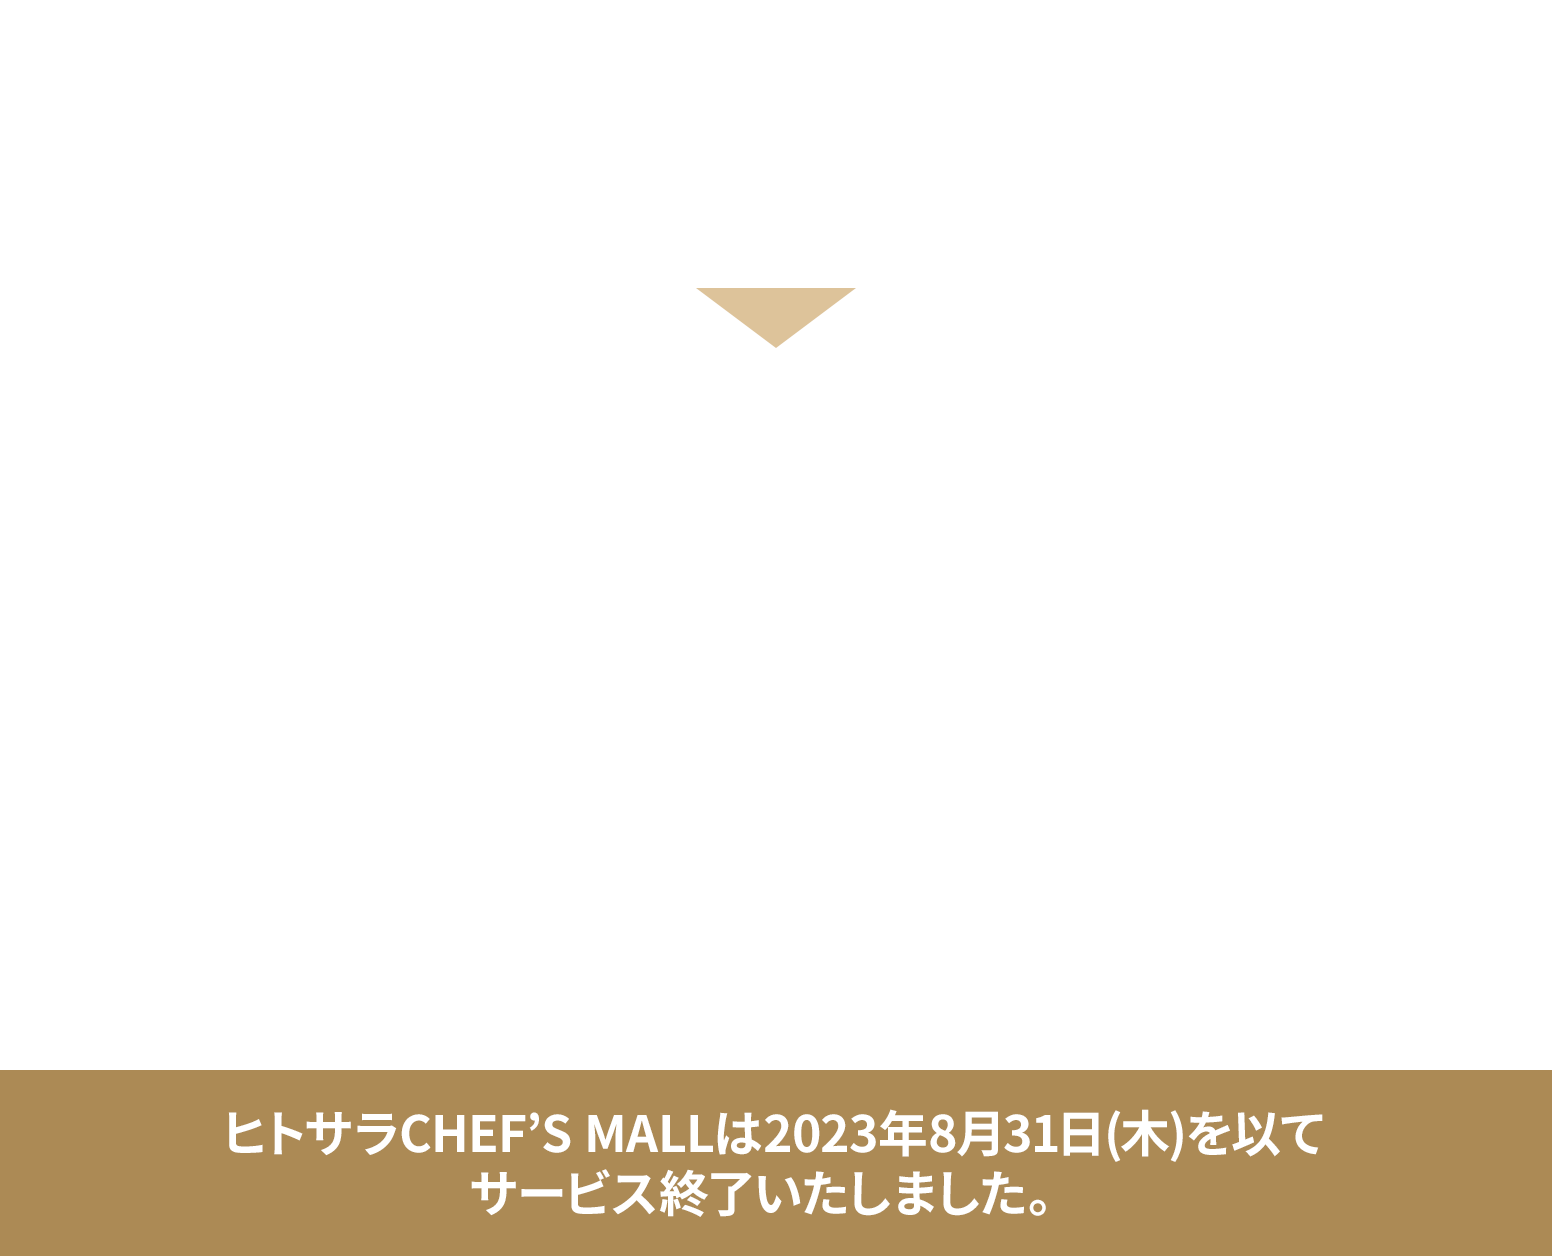 ヒトサラ＋ヒトサラCHEF’S MALL
                        アカウント連携とご利用で最大2,100POINTもらえる